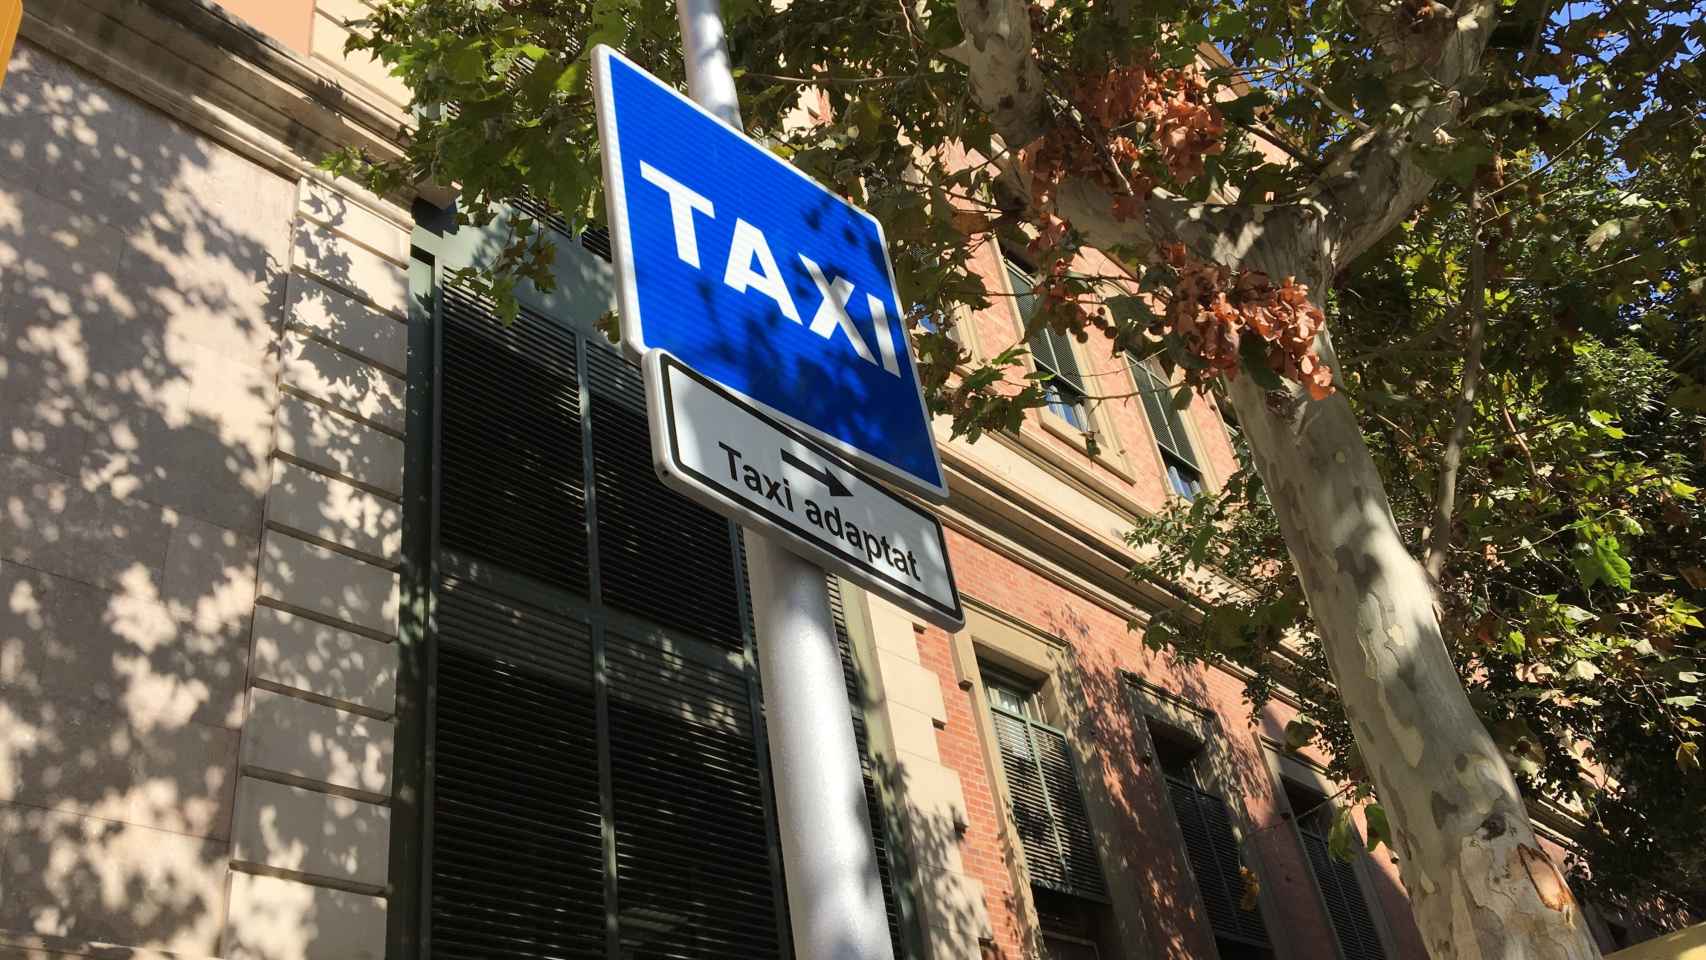 Señal de zona para taxis adaptados en Barcelona / RP